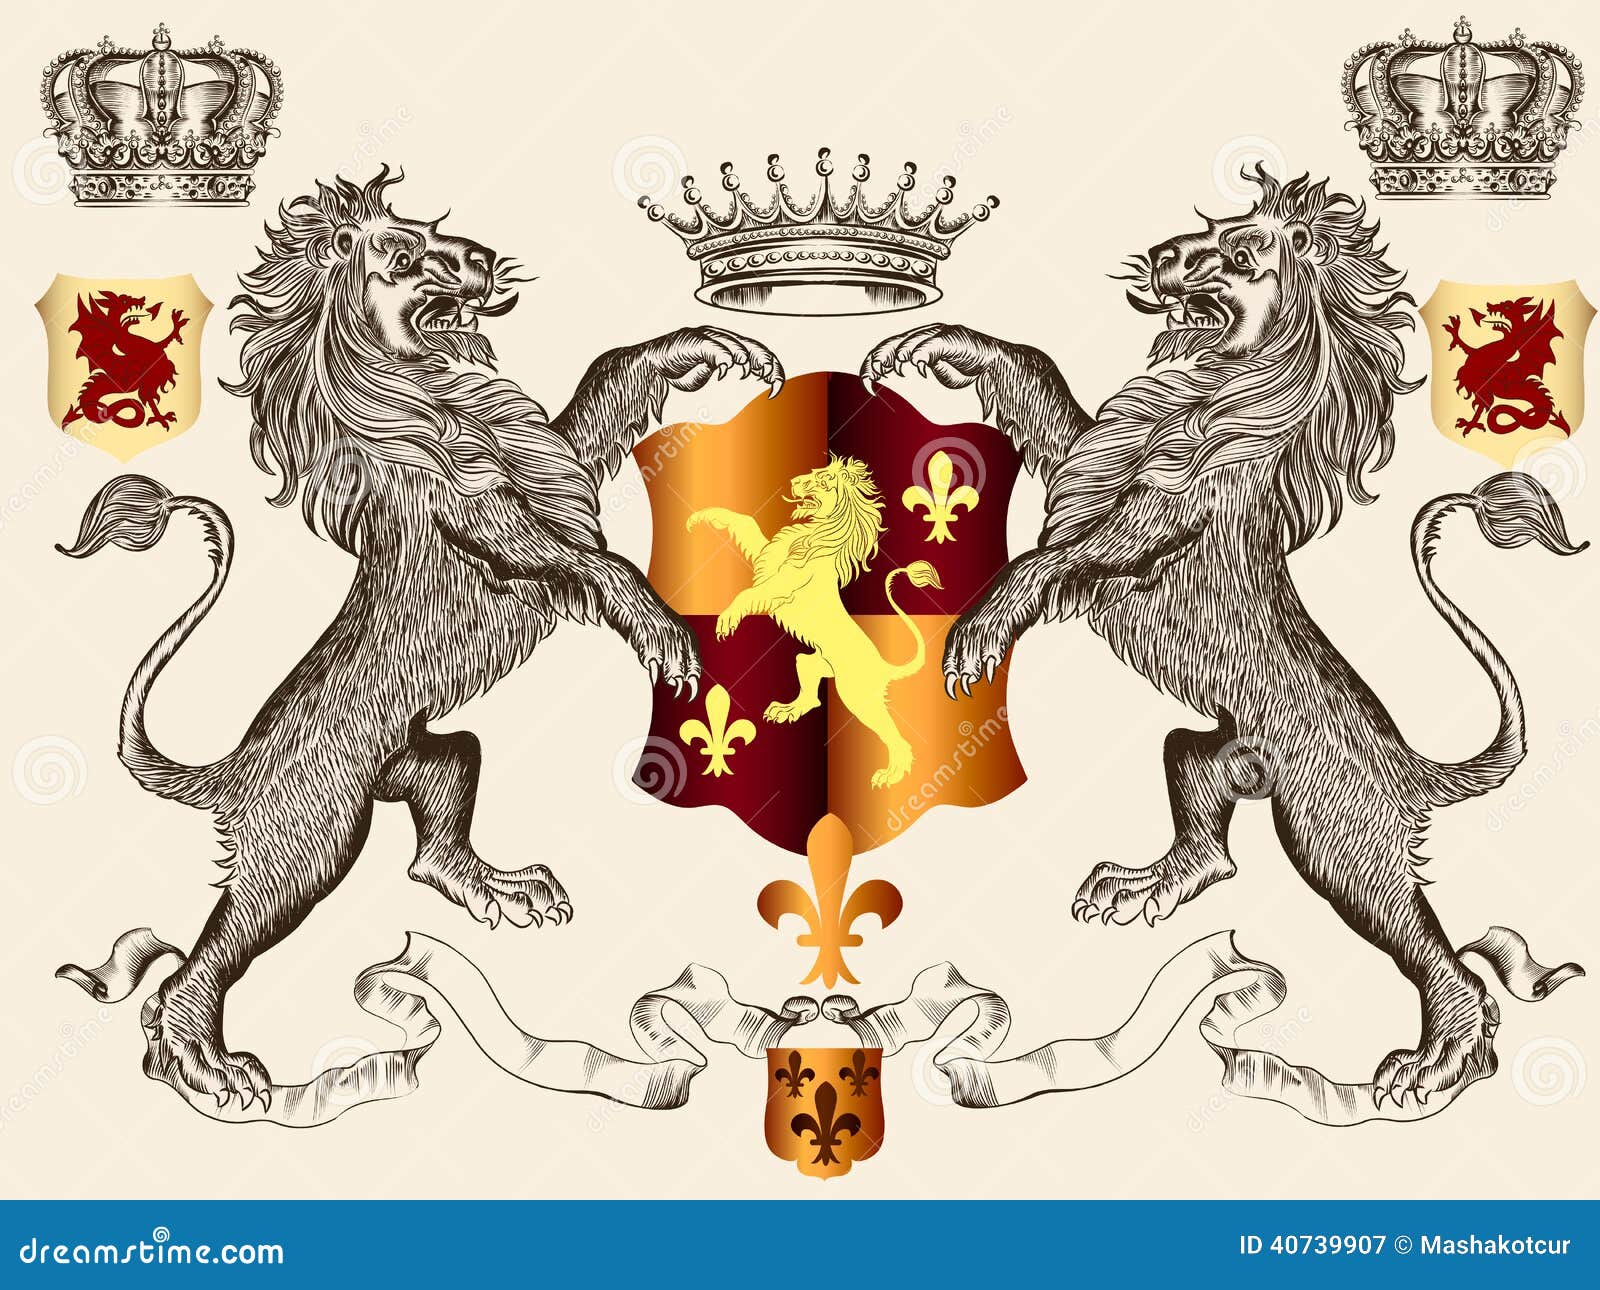 Герб где лев. Геральдический щит со львами и короной. Герб со львом. Геральдический Лев с короной. Изображение Льва на гербе.